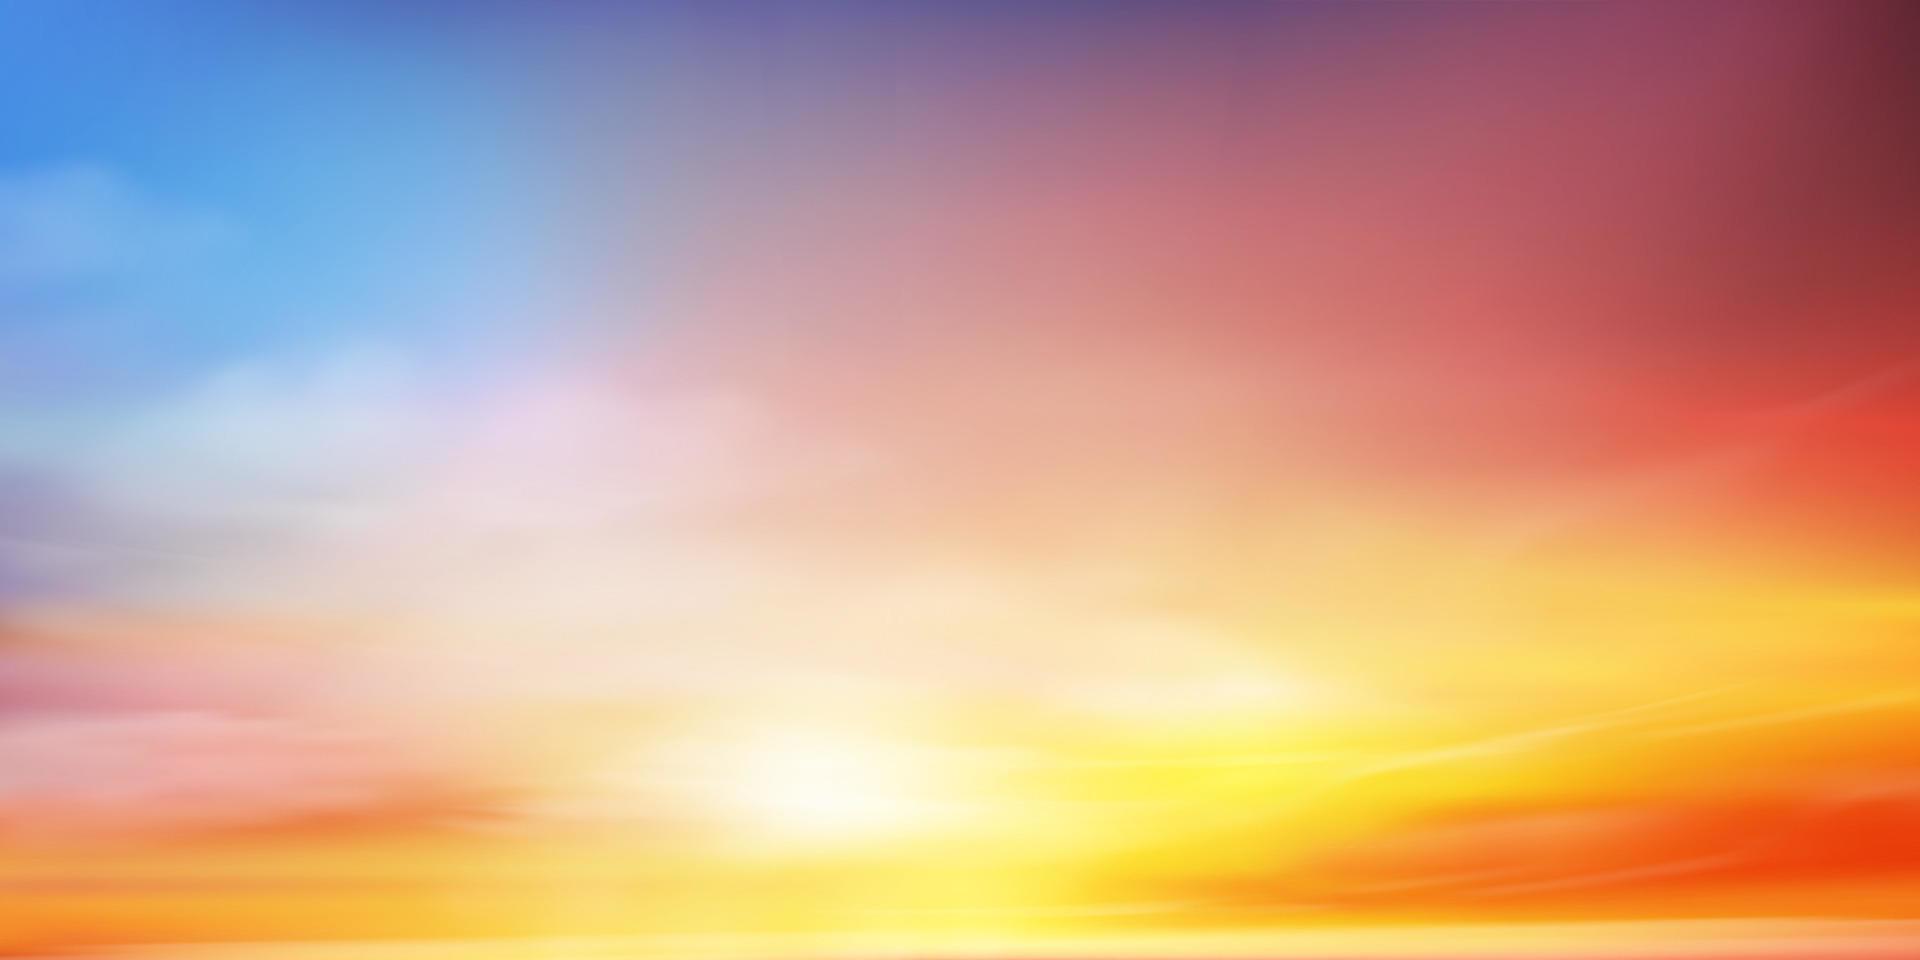 soluppgång morgon- med orange, gul, rosa, blå himmel, dramatisk skymning landskap med solnedgång himmel i kväll, vektor horisont skön natur baner av soluppgång eller solljus för fyra säsonger bakgrund